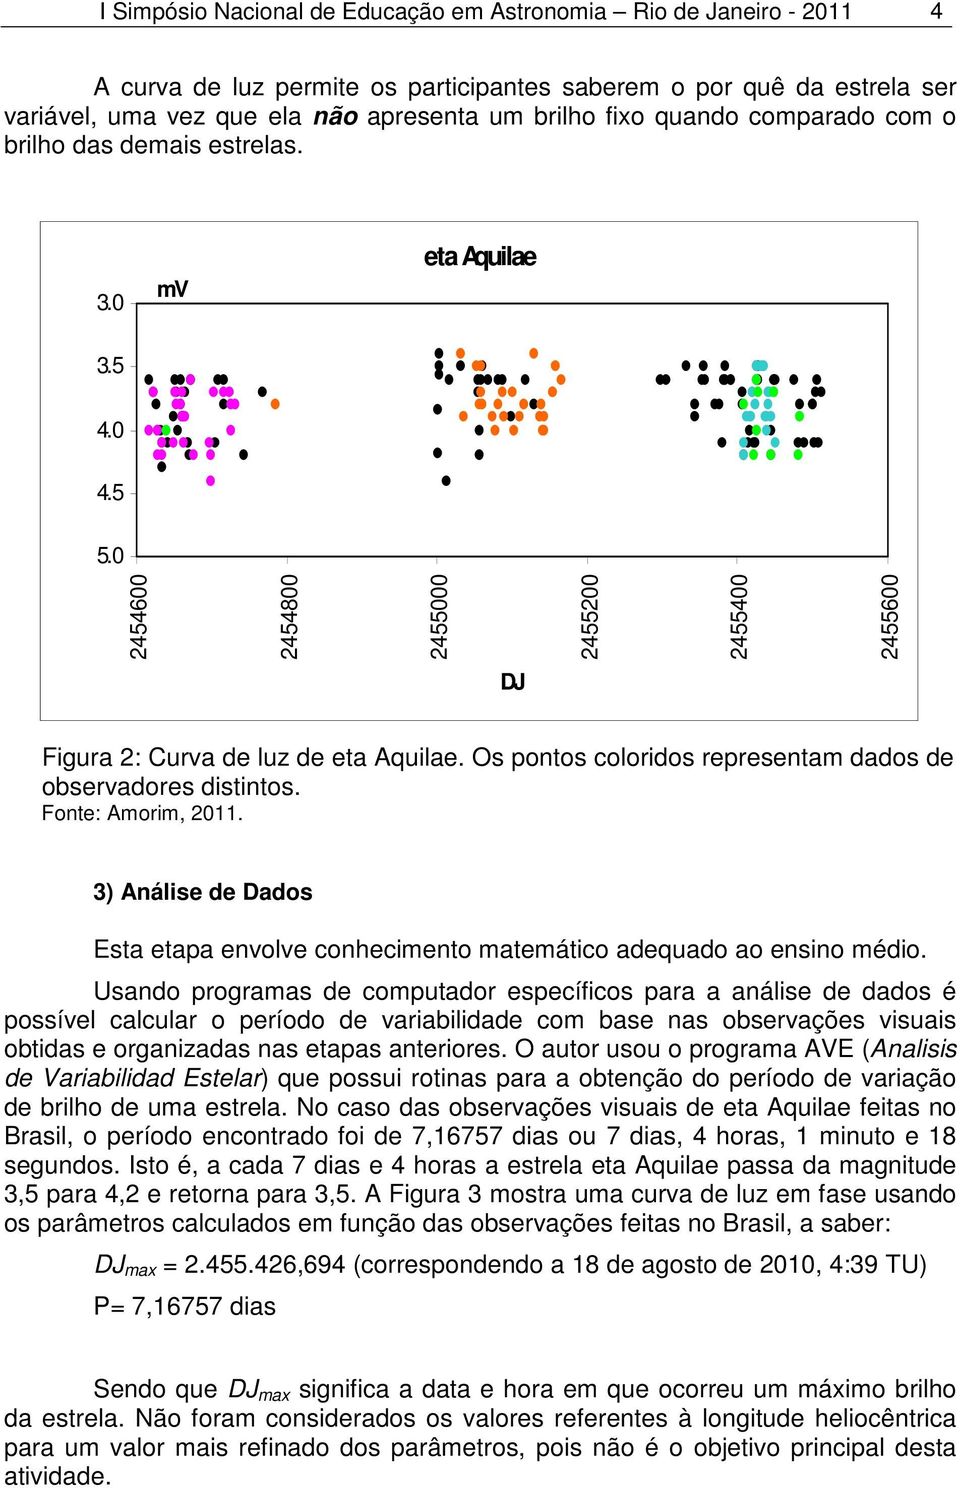 Os pontos coloridos representam dados de observadores distintos. Fonte: Amorim, 2011. 3) Análise de Dados Esta etapa envolve conhecimento matemático adequado ao ensino médio.